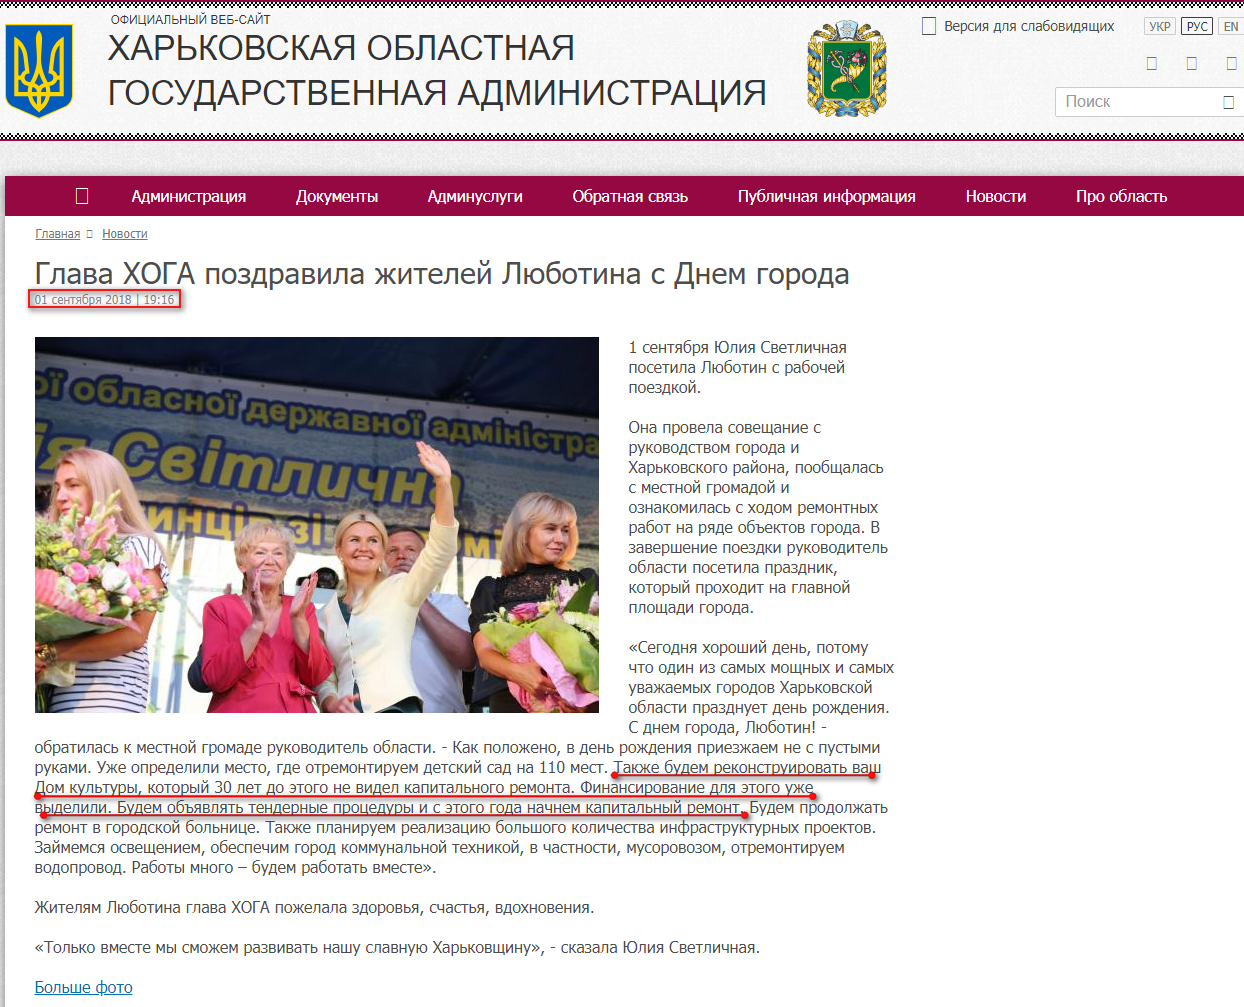 http://kharkivoda.gov.ua/ru/news/94608